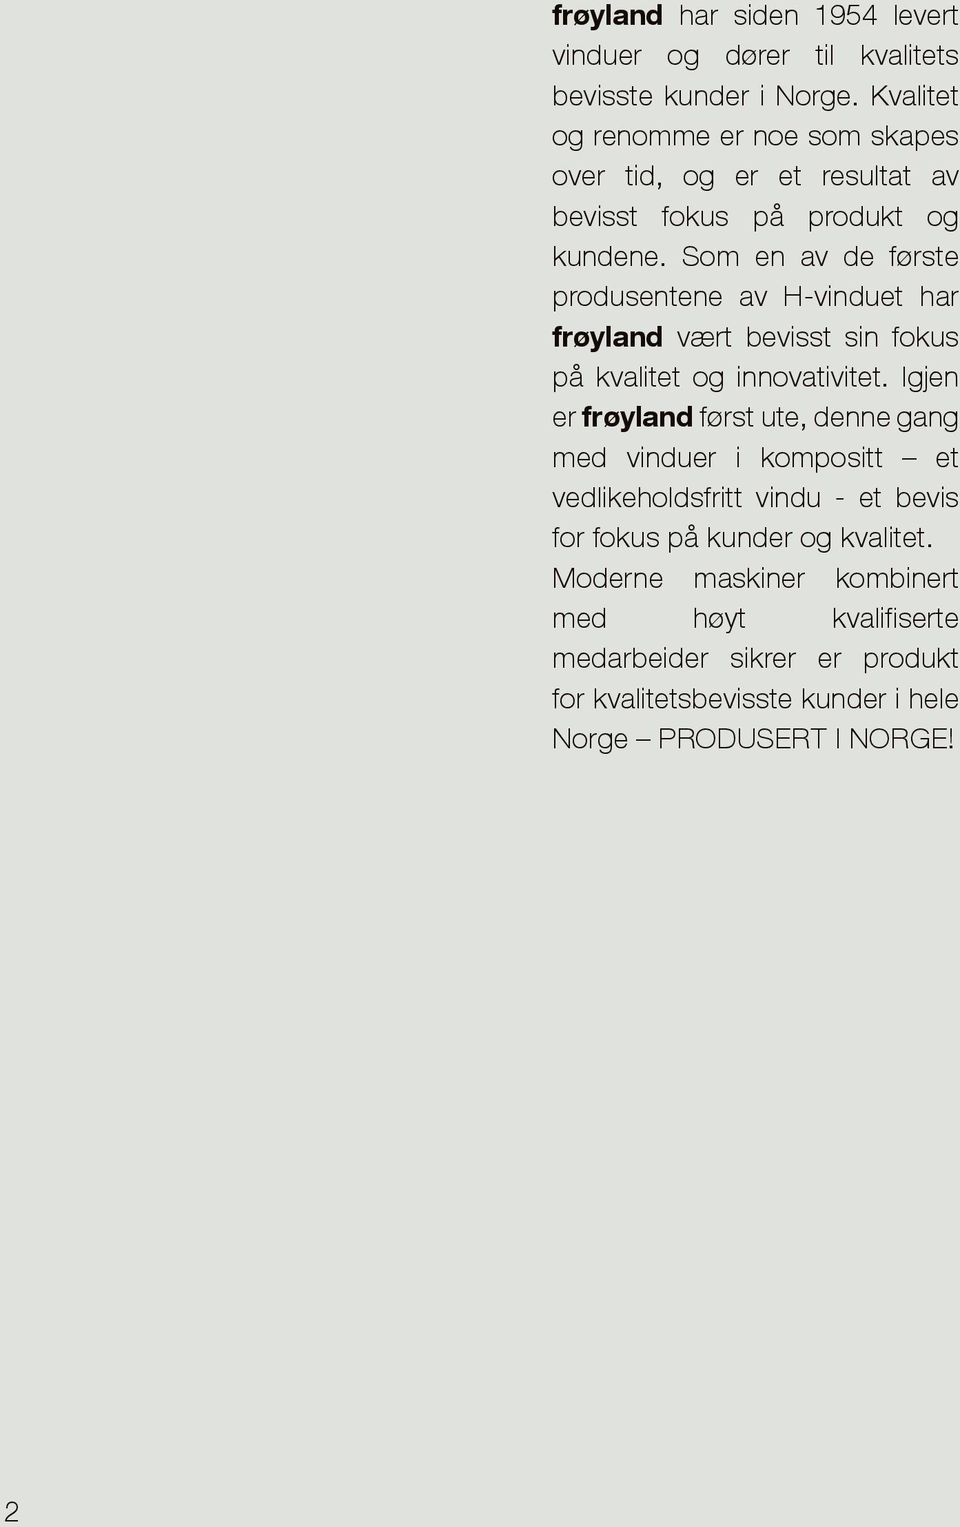 Som en av de første produsentene av H-vinduet har frøyland vært bevisst sin fokus på kvalitet og innovativitet.